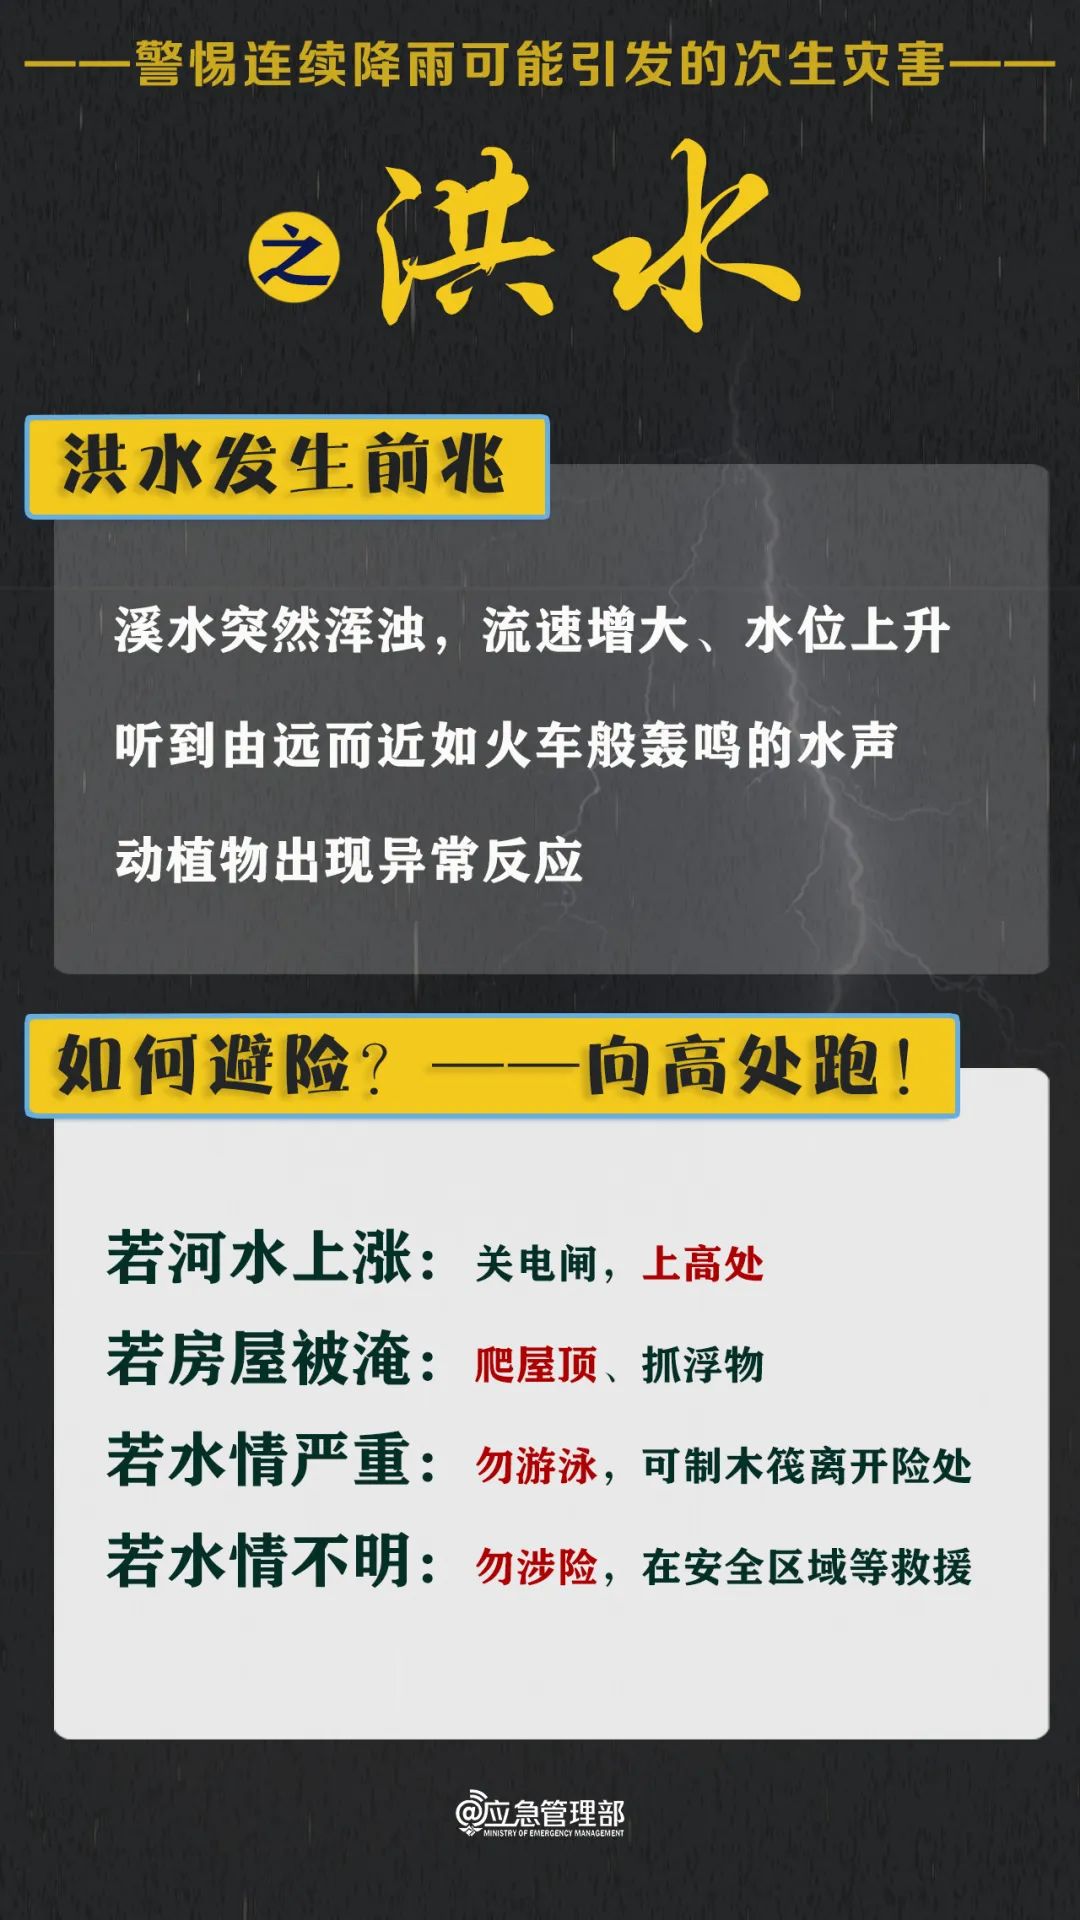 来源：中国应急管理报融媒体工作部 综合整理 延伸阅读 